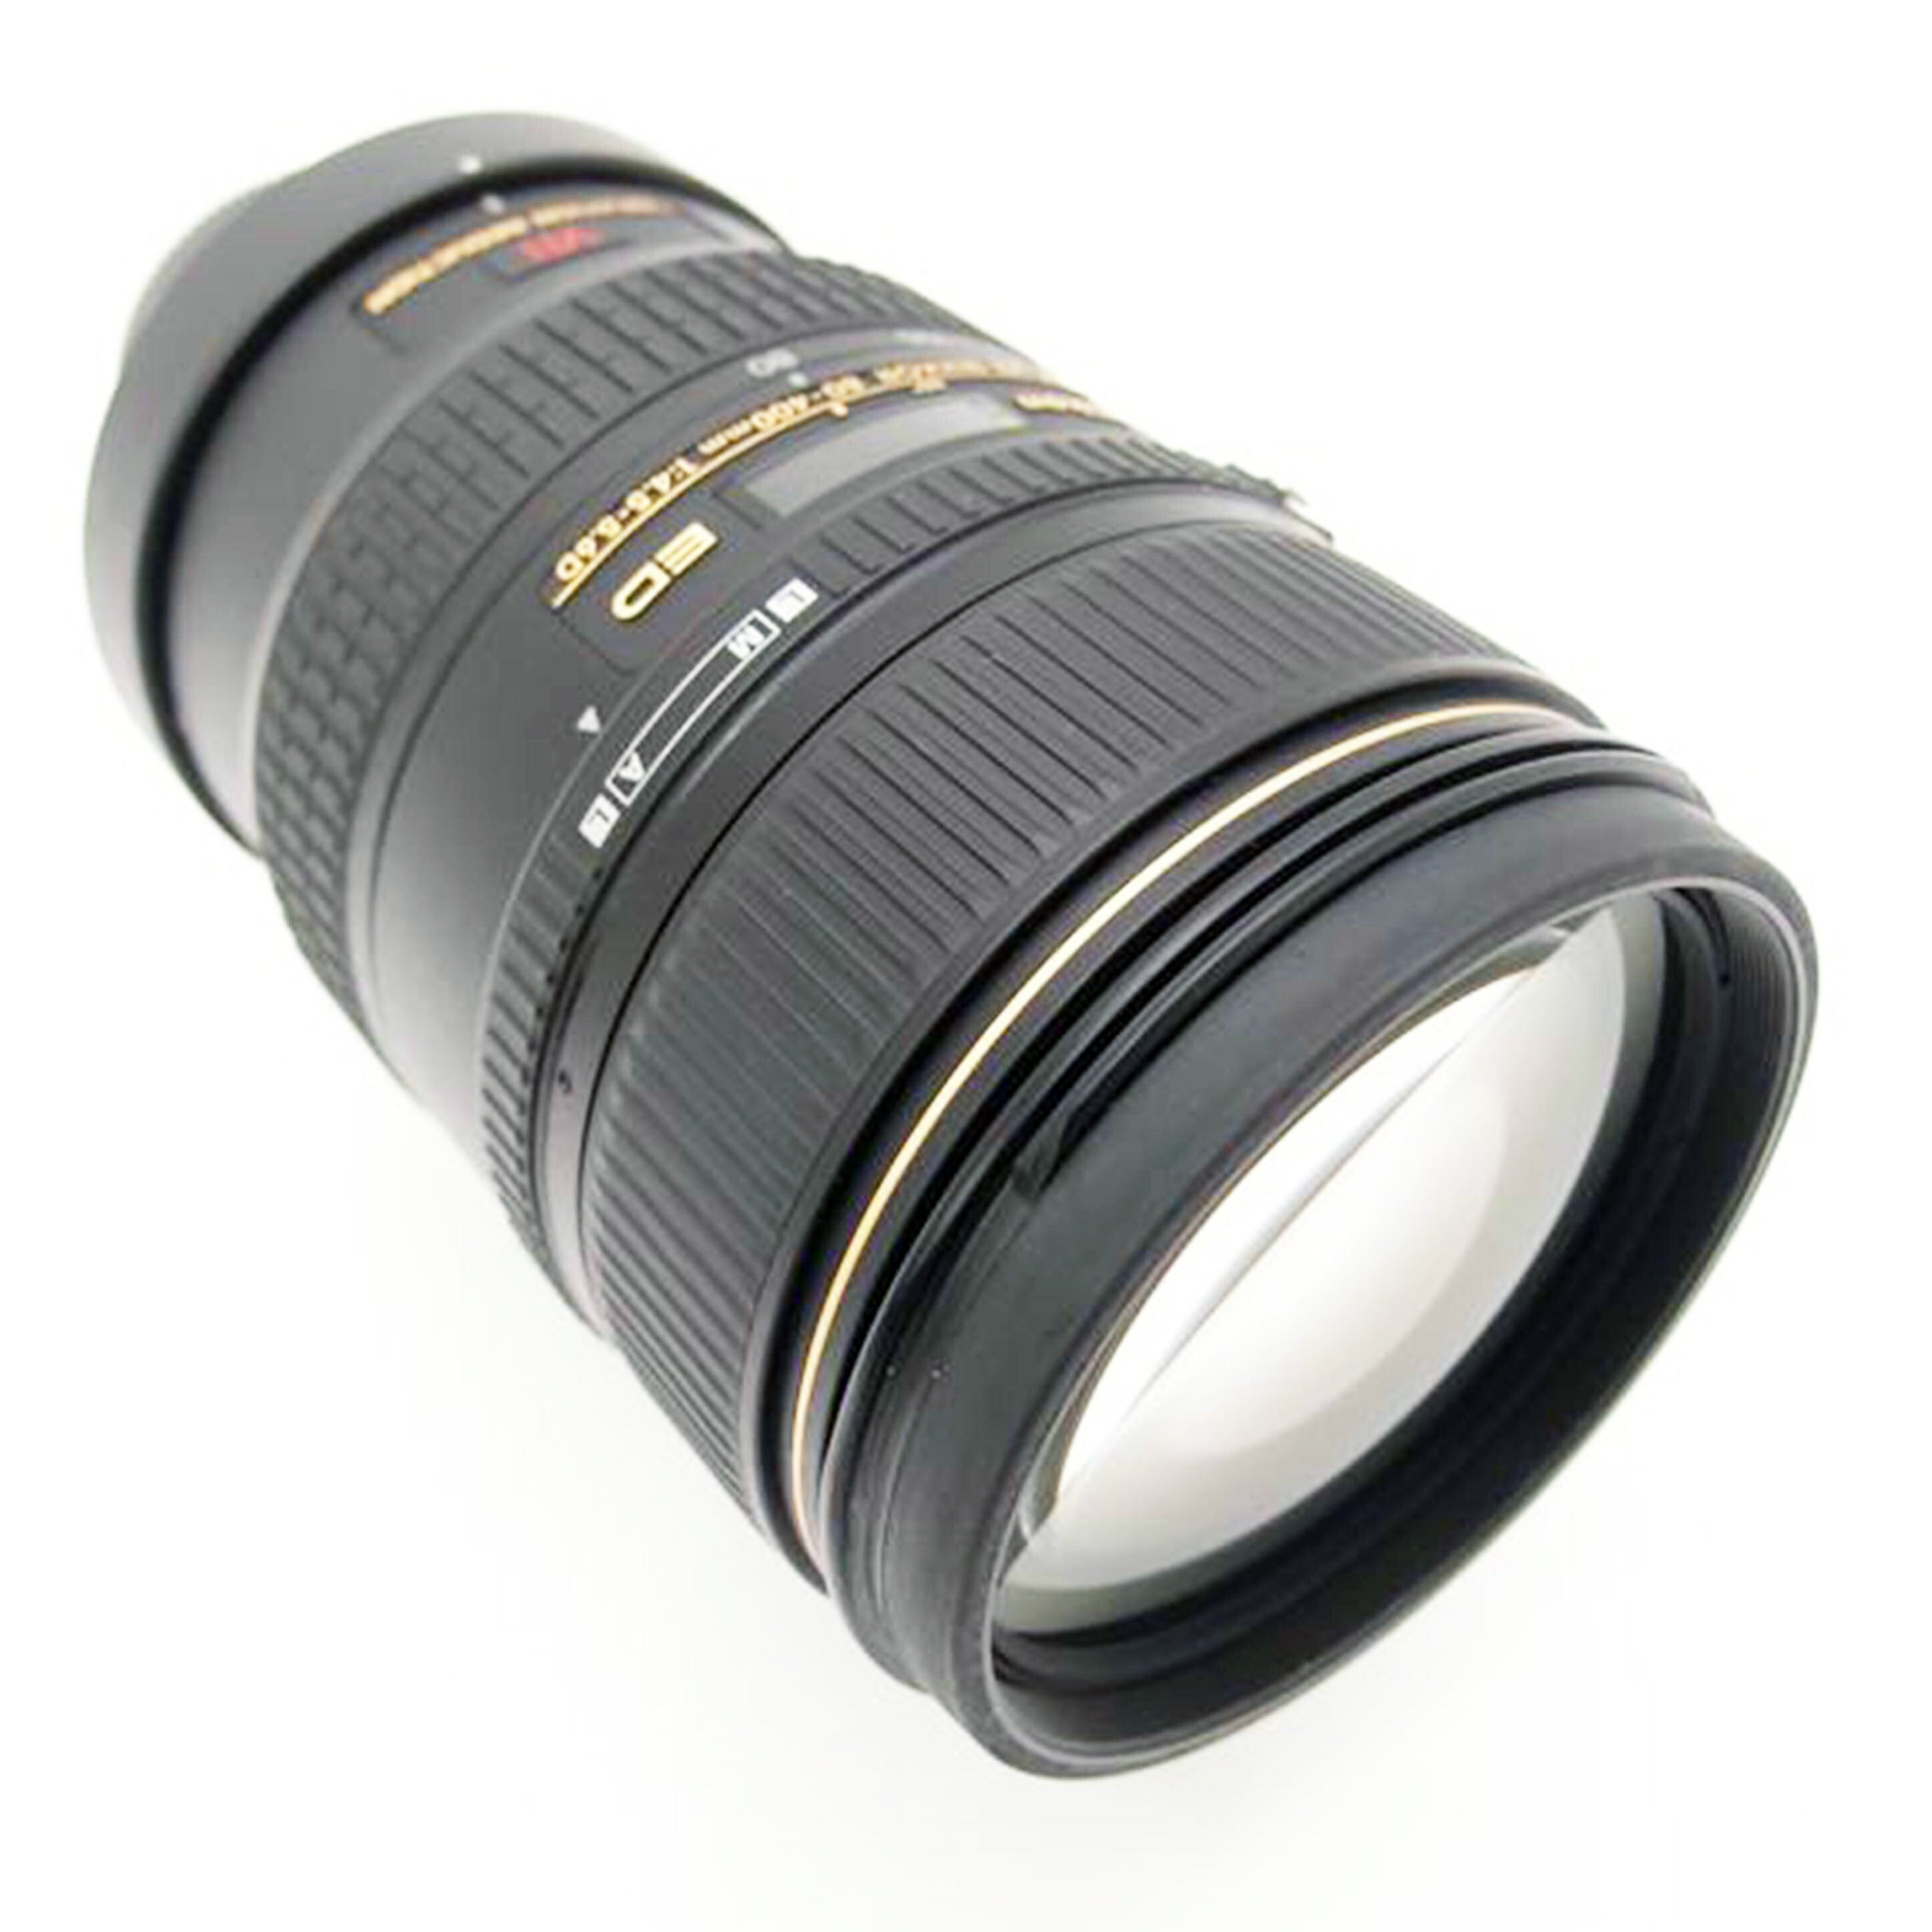 Nikon ニコン/デジタル対応レンズ/AI AF VR Zoom-Nikkor 80-400mm f/4.5-5.6D ED//230120/Aランク/69